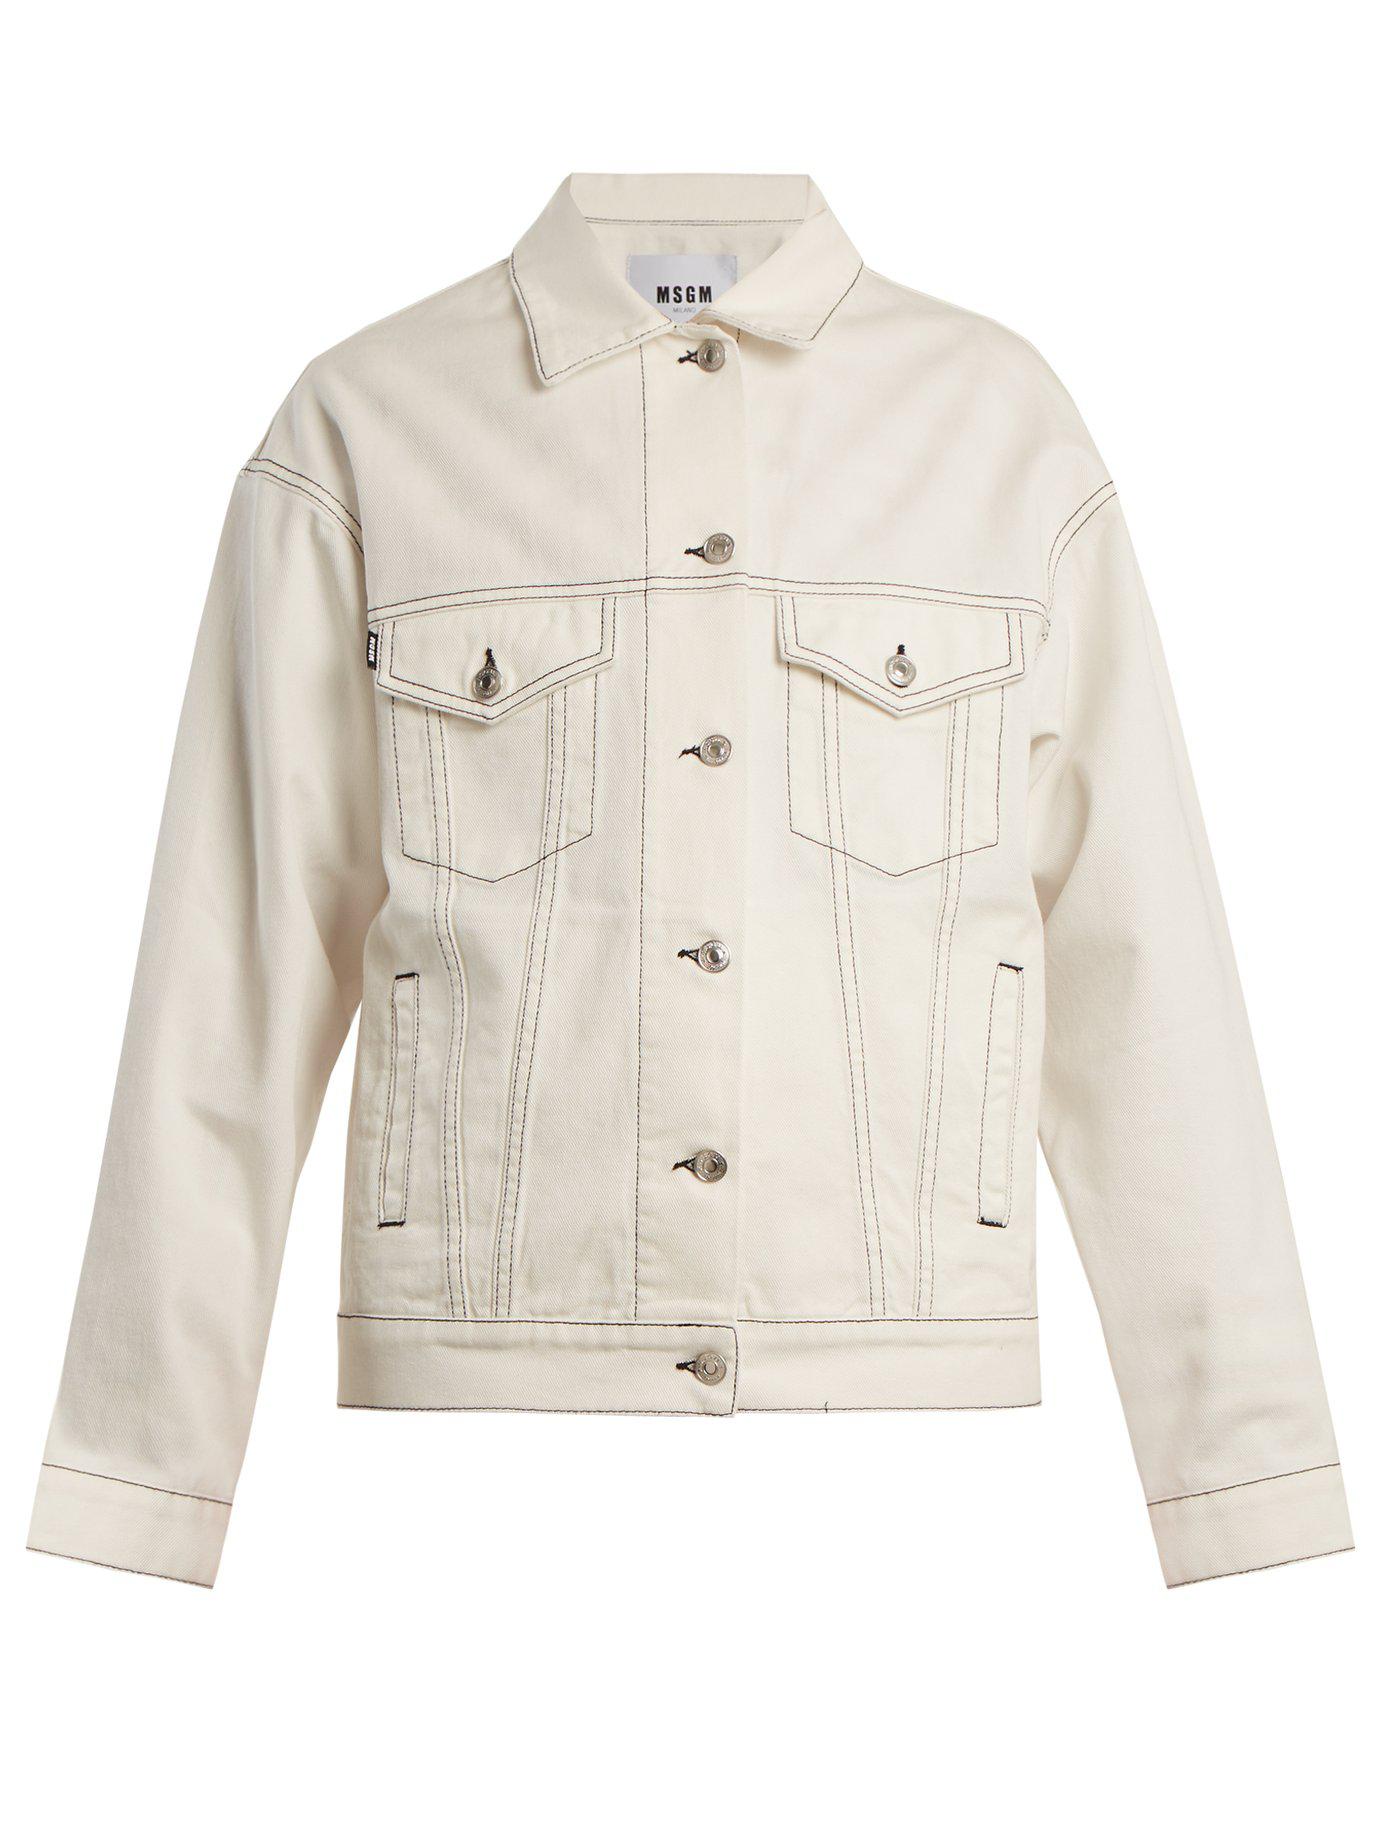 MSGM Oversized Denim Jacket in White - Lyst